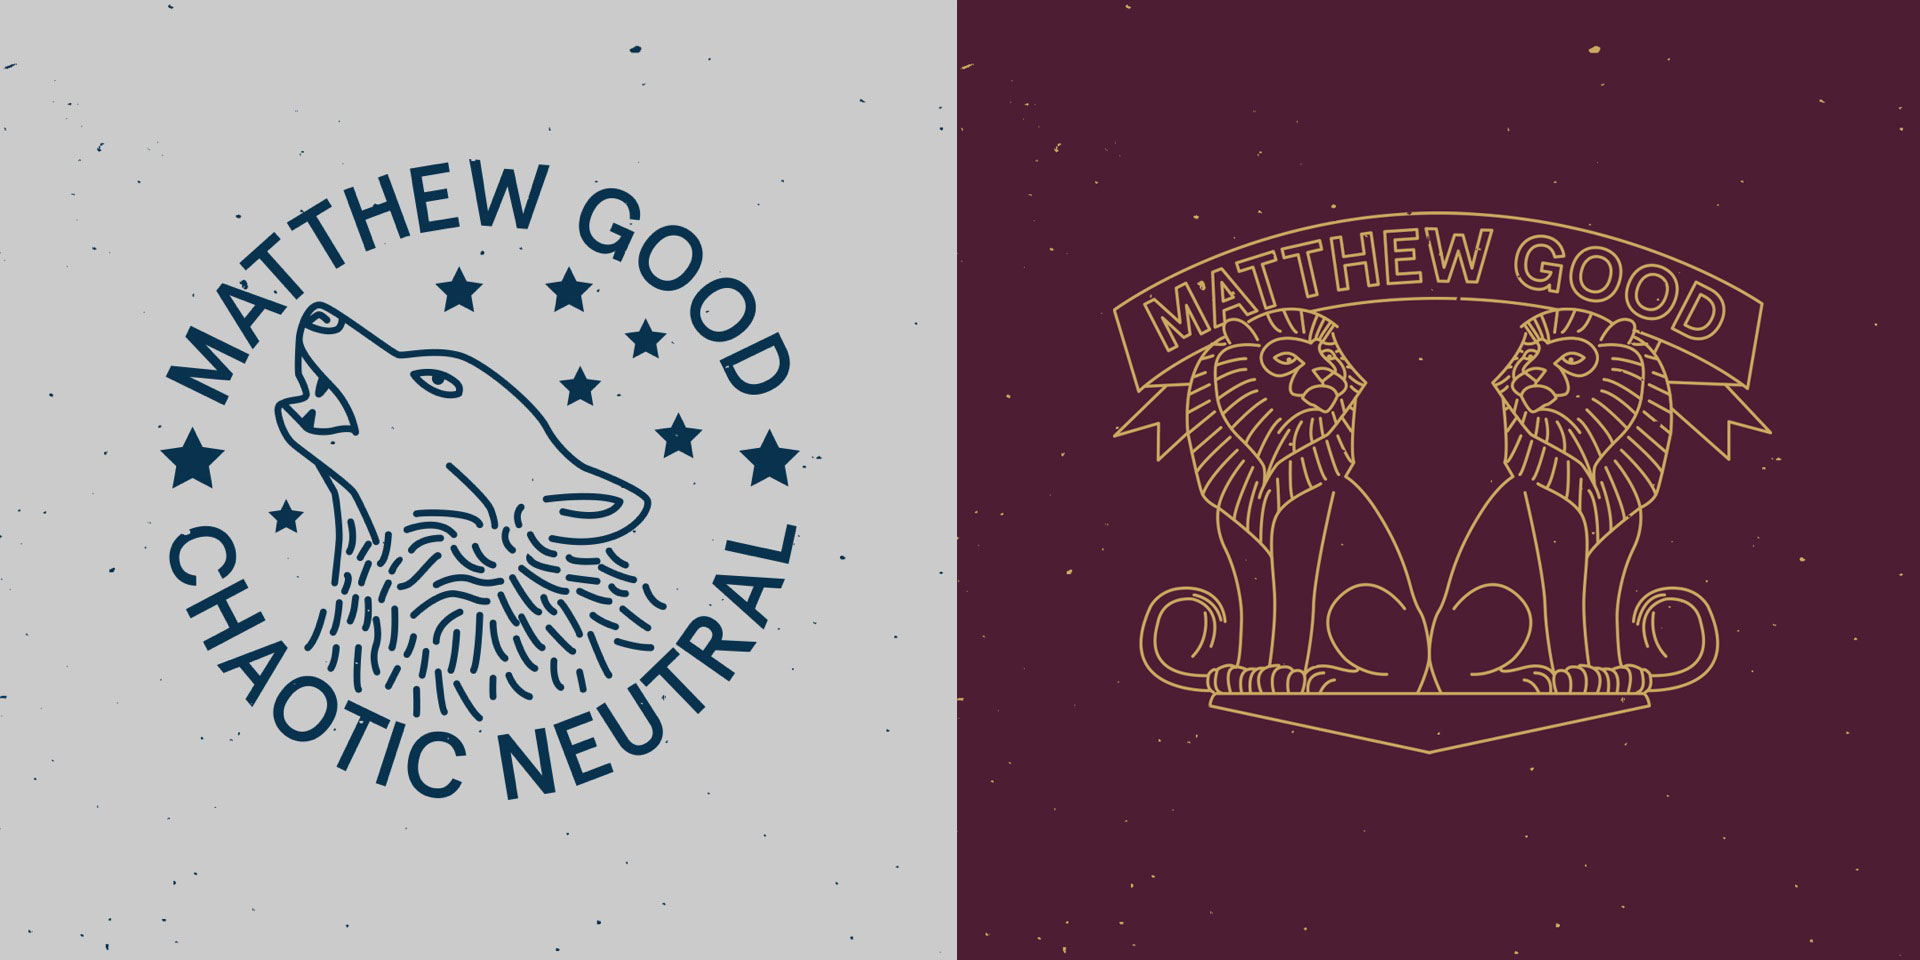 Matthew Good Chaotic Neutral T-shirt merchandise